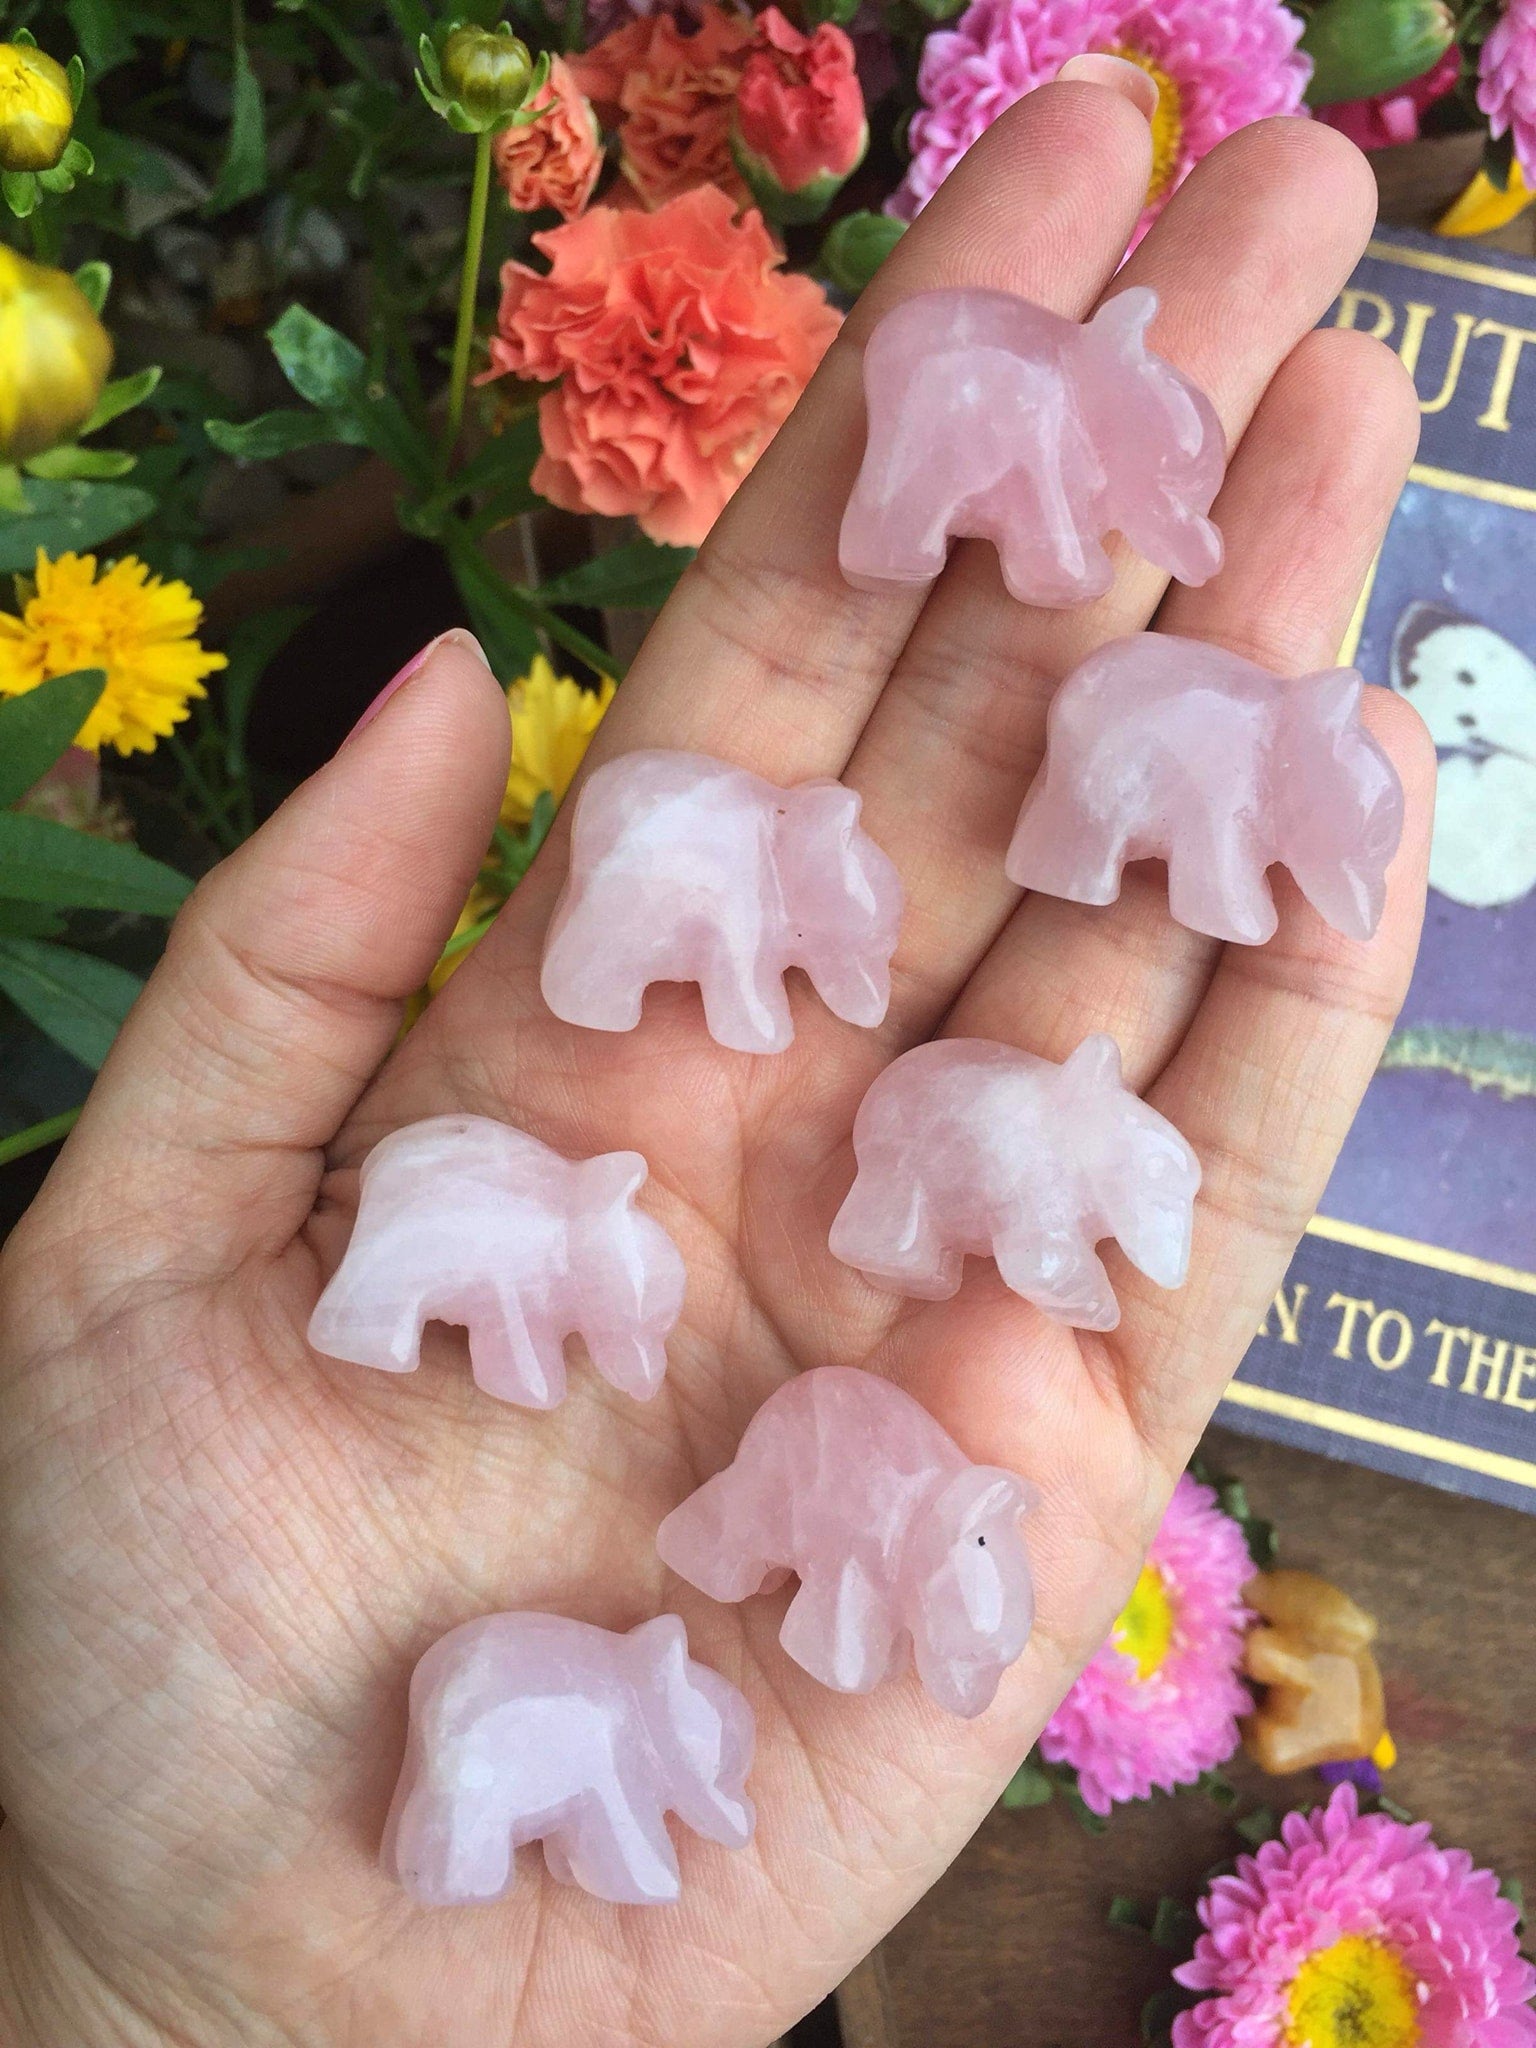 Mini rose quartz bears